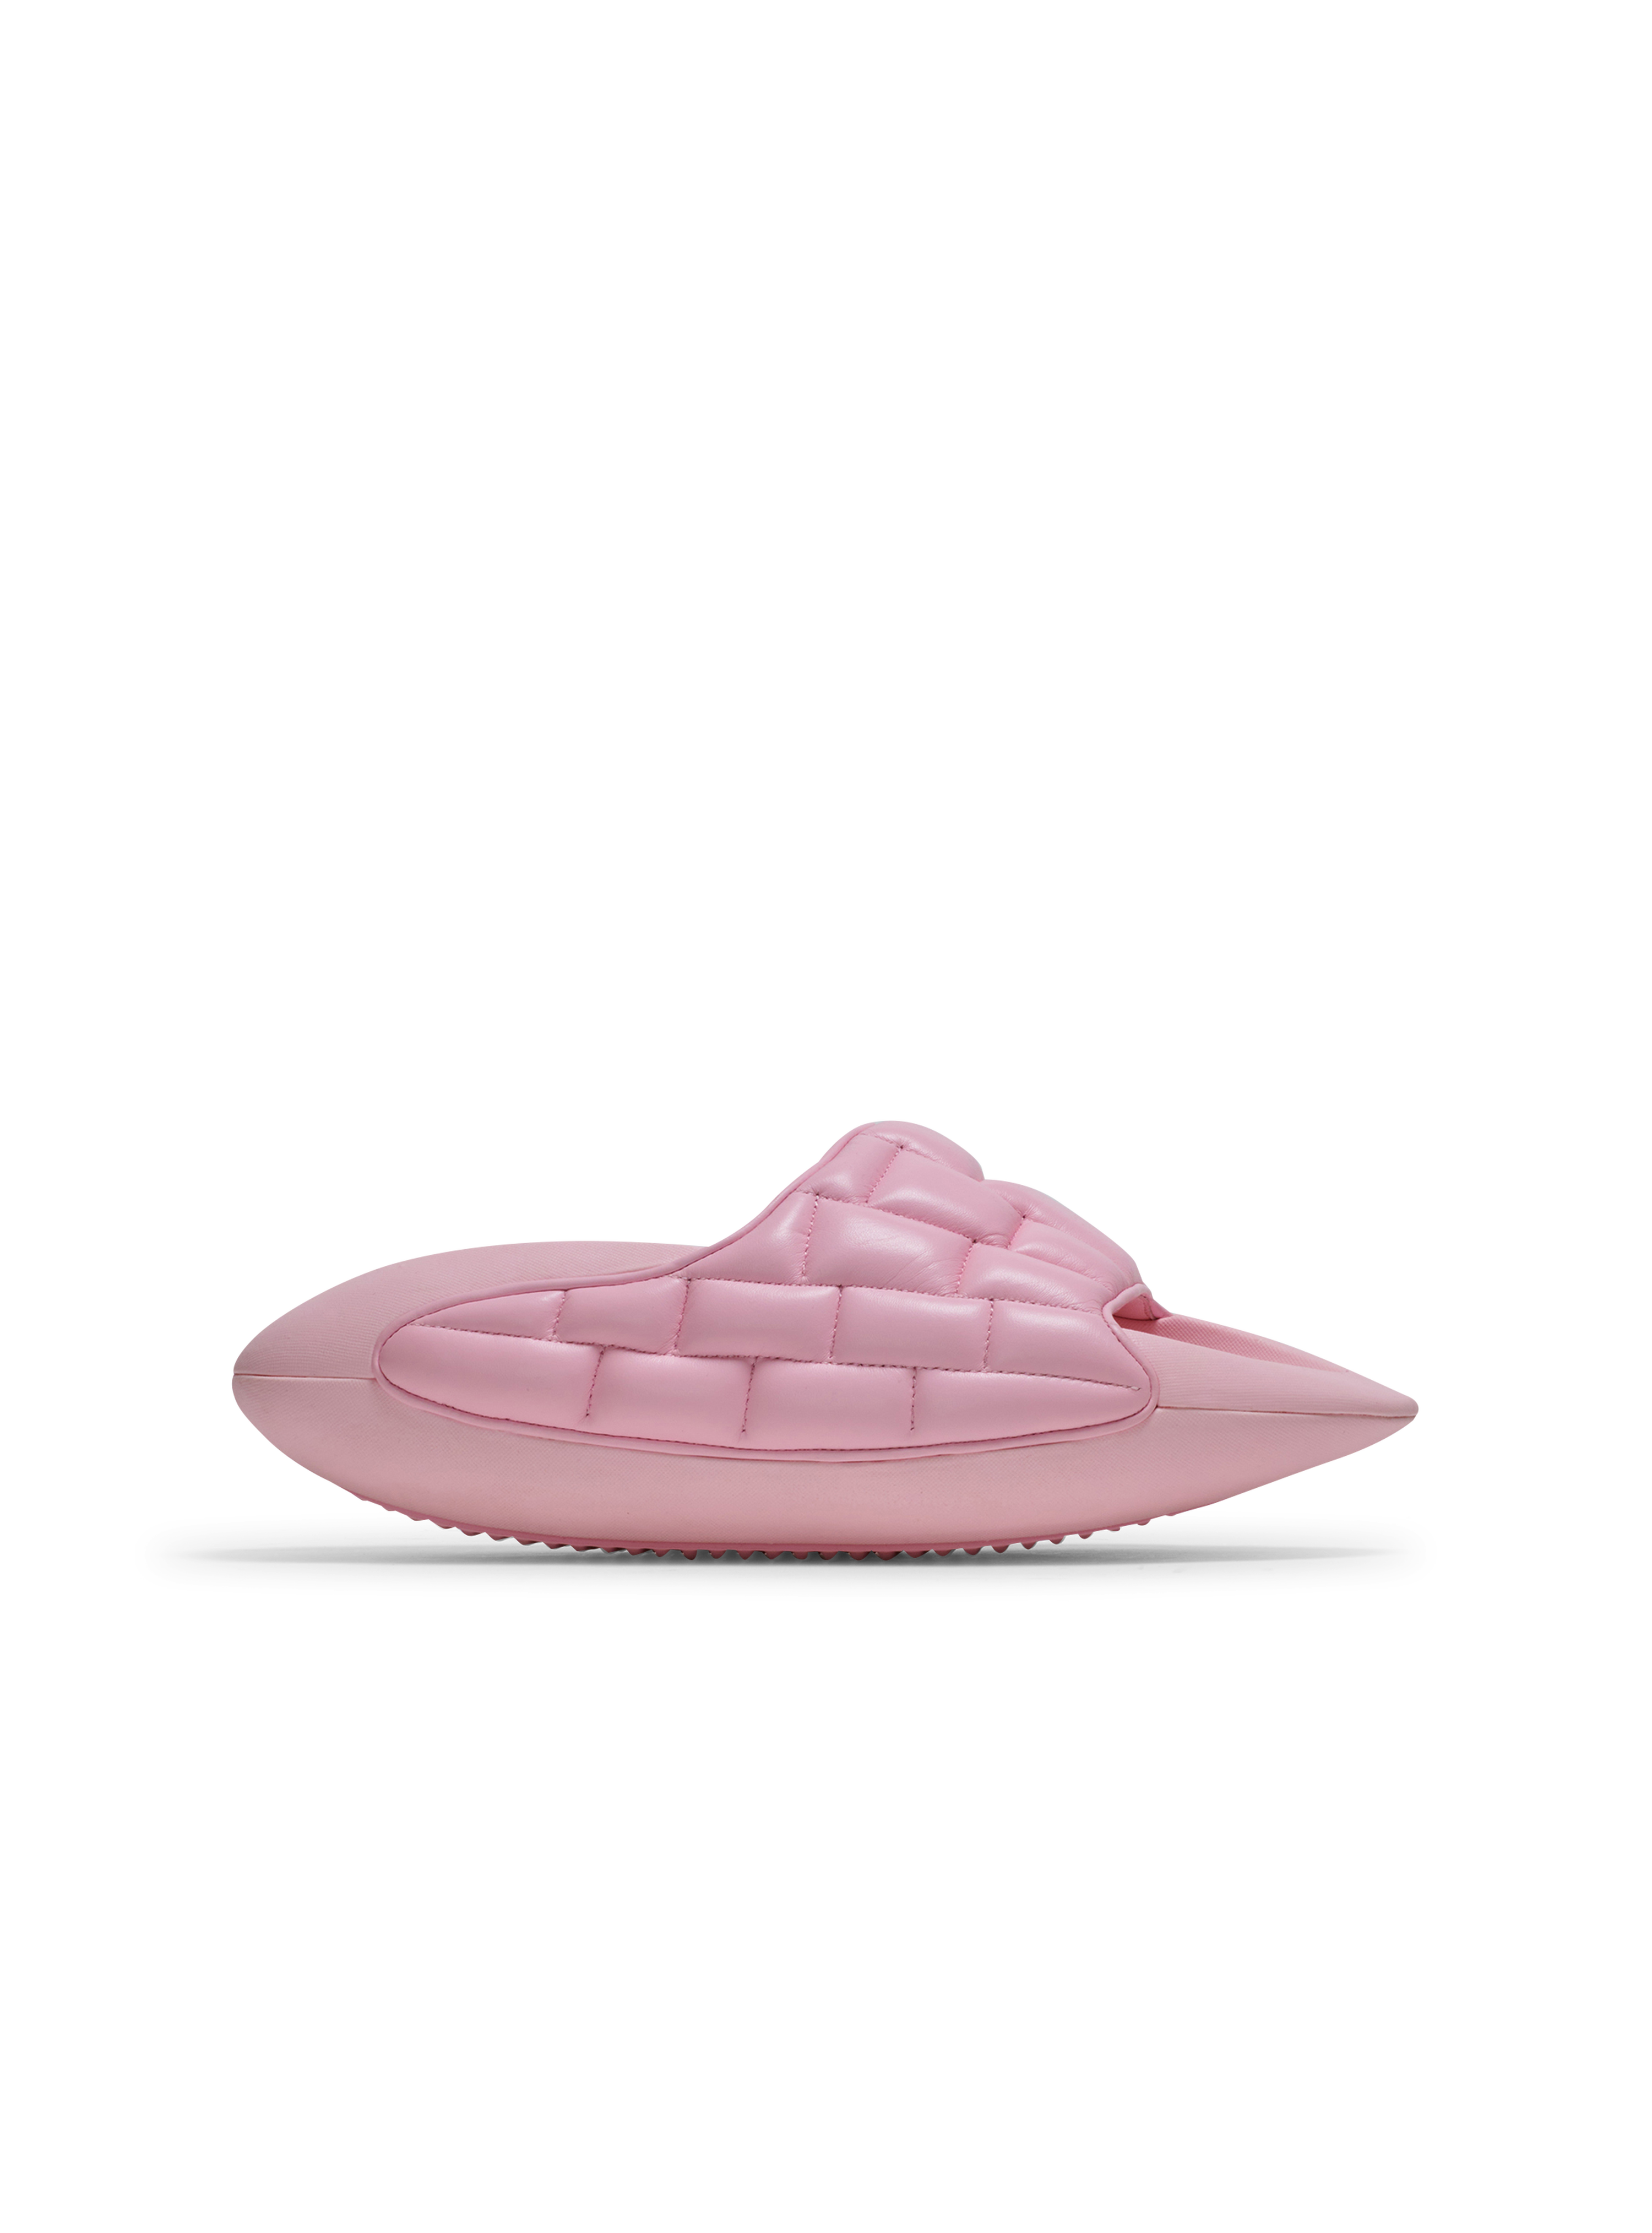 绗缝皮革 B-IT 穆勒鞋, pink